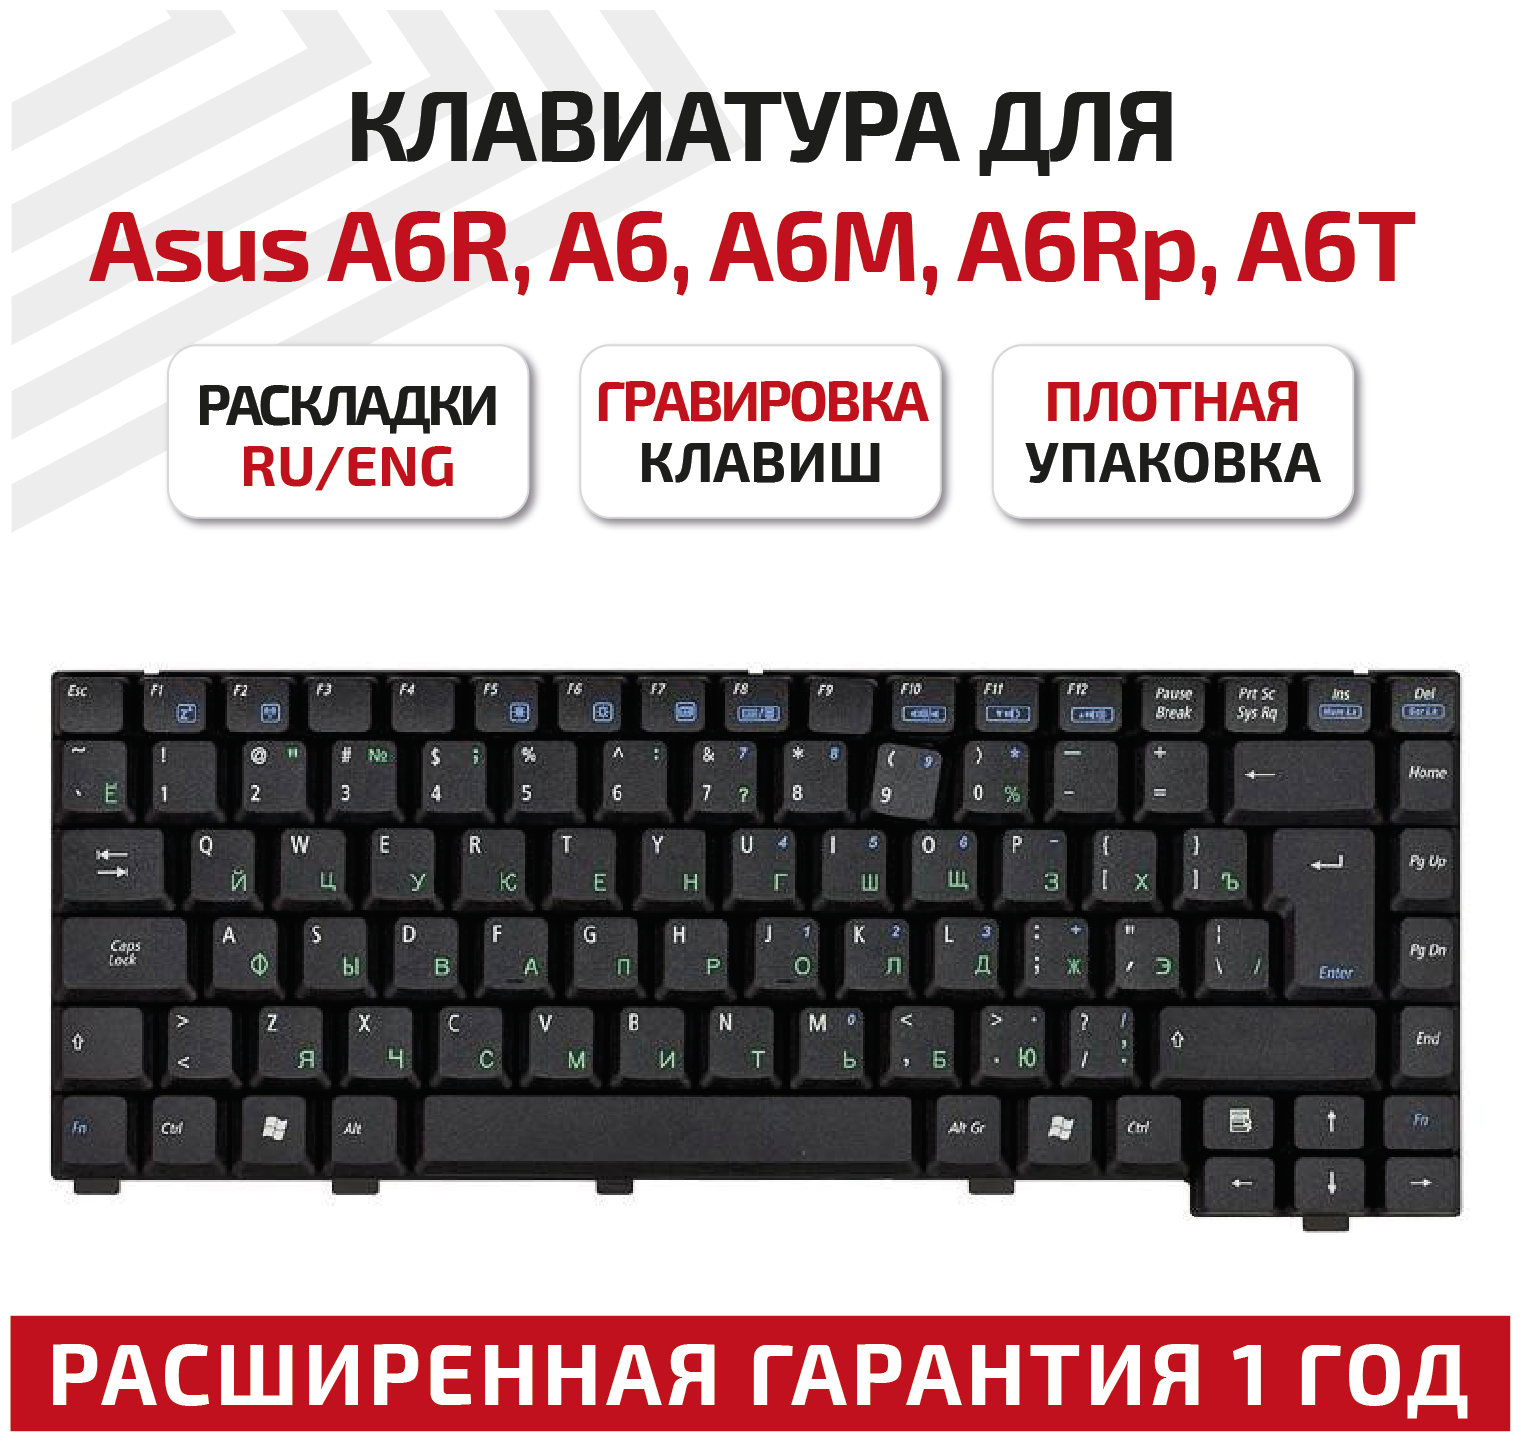 Клавиатура (keyboard) 04-NA51KRUS1-2 для ноутбука Asus A6R, A6, A6M, A6Rp, A6T, A6Tc, A6U, A3G, A3N, A3000, A6000, G1S, черная